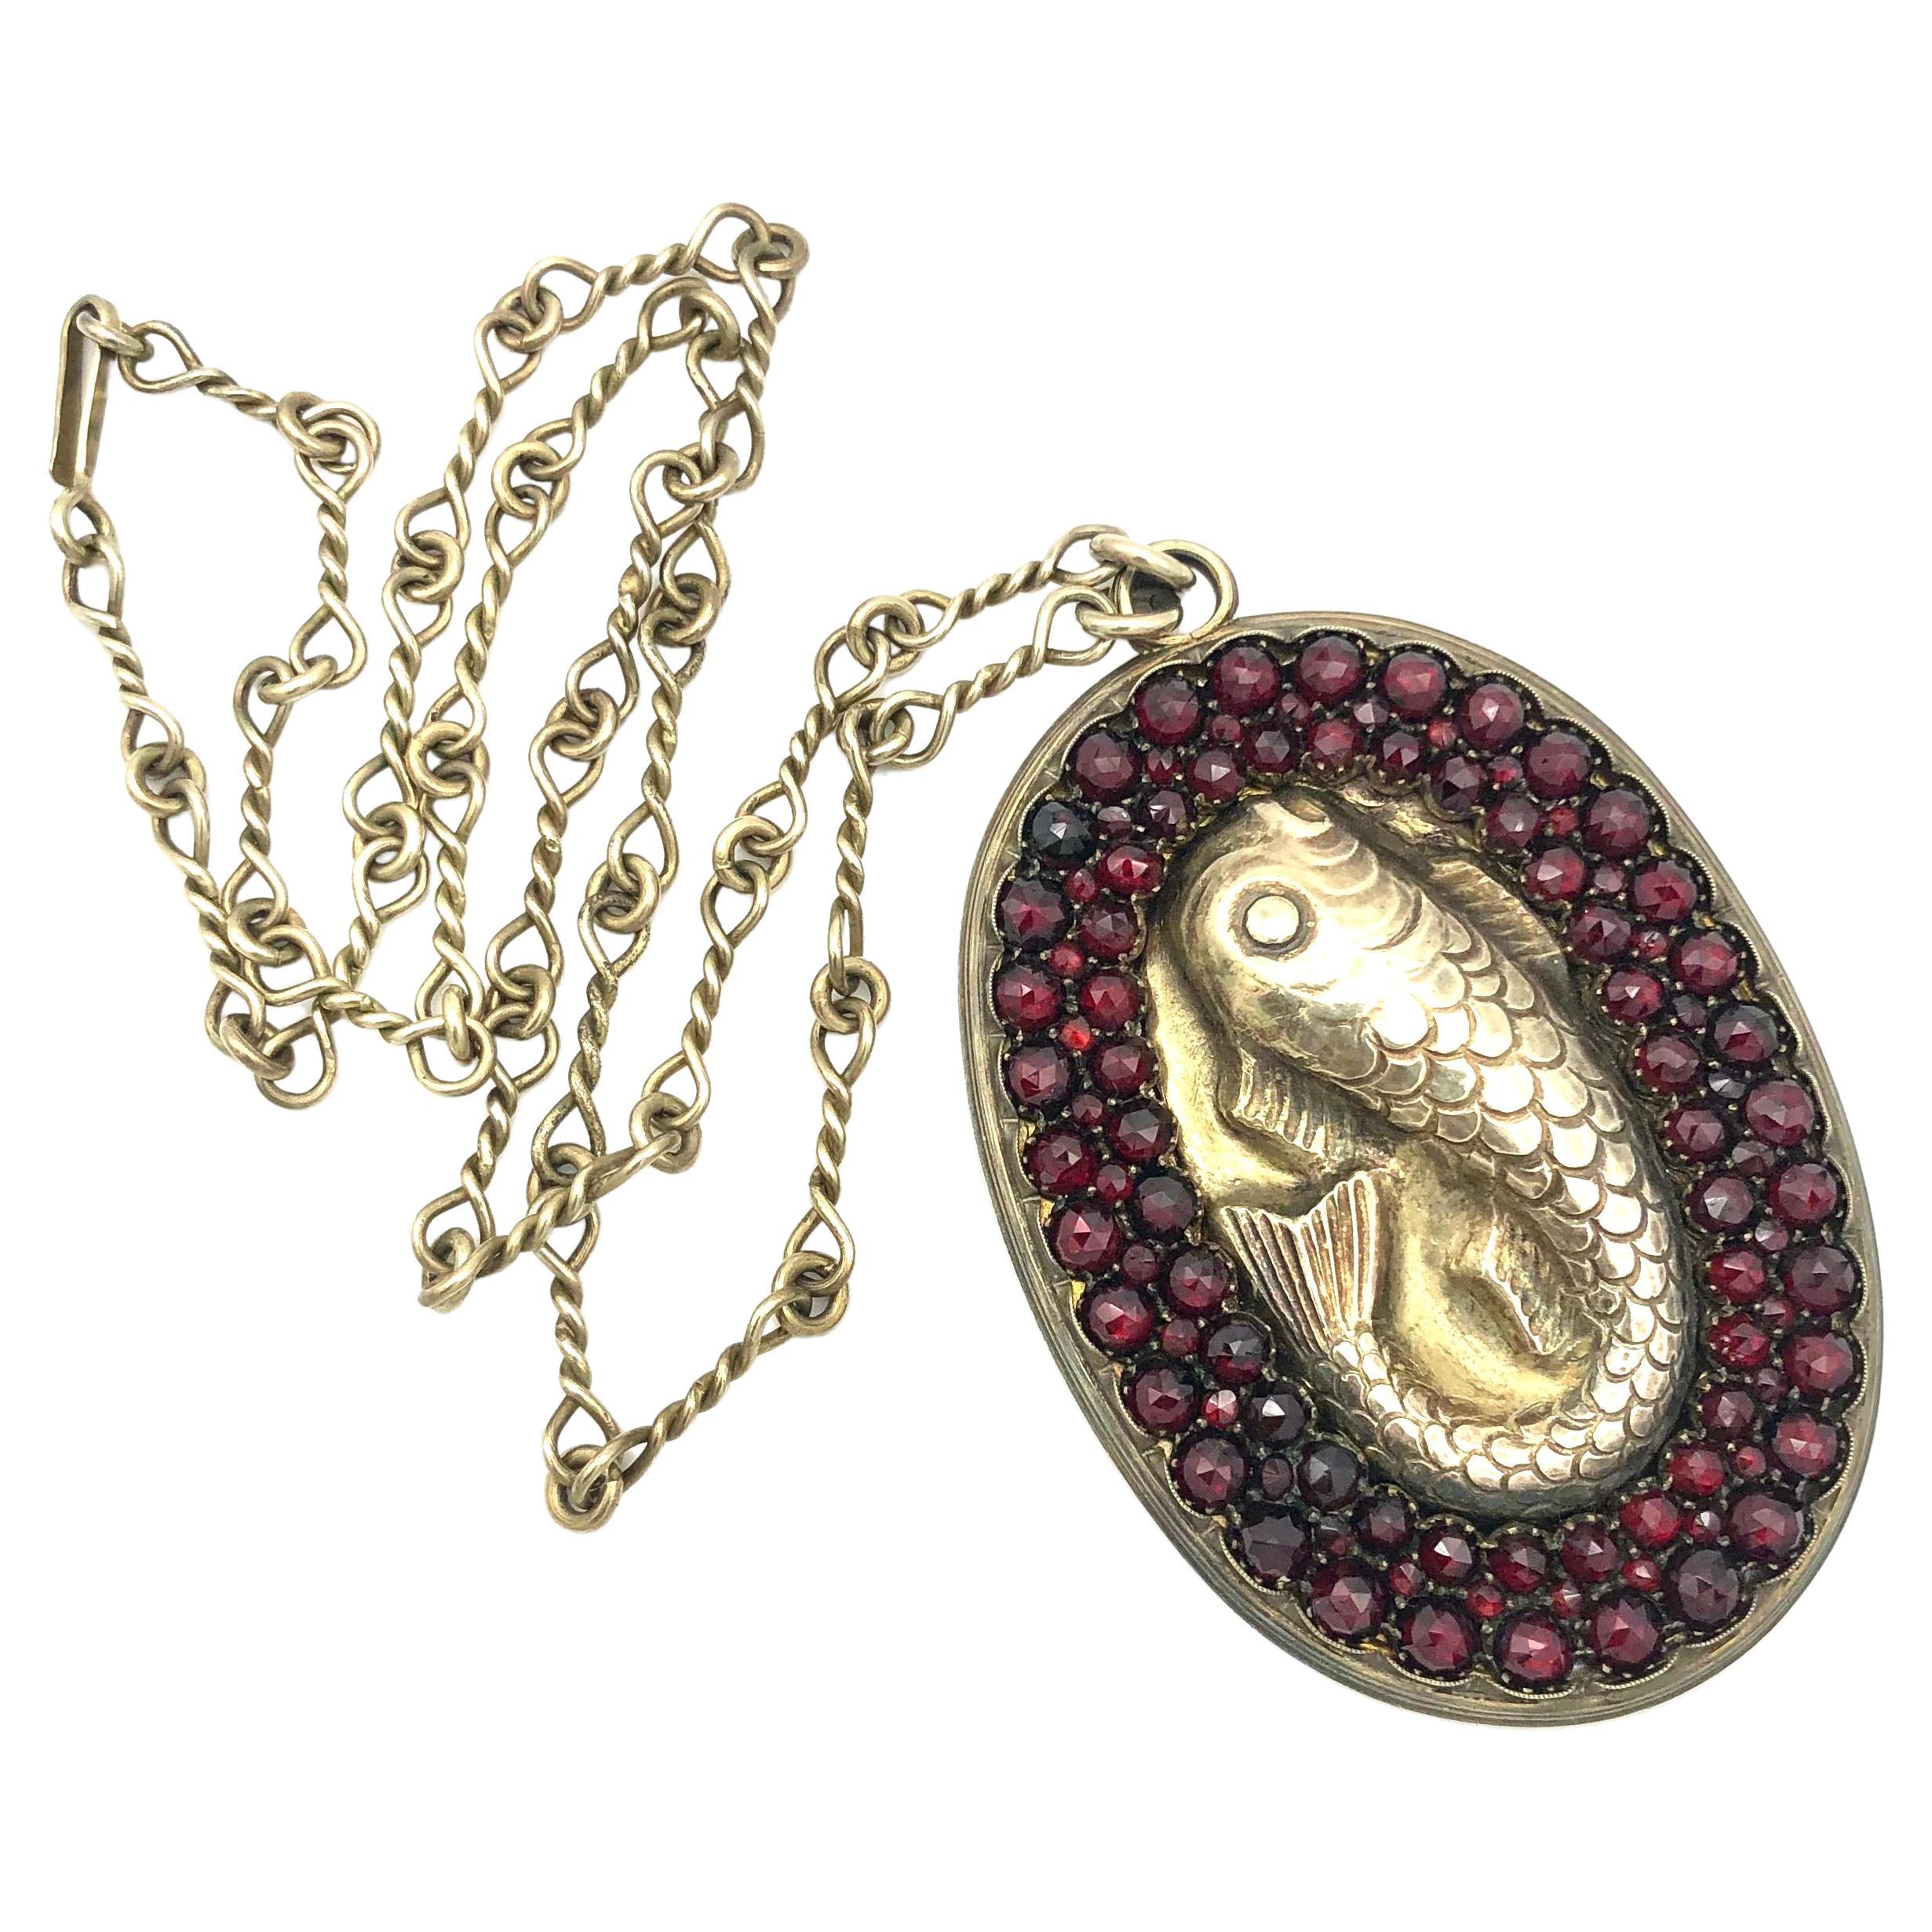 Antique Arts & Crafts Fish Wale Pendant Necklace Garnets Silver Guilt